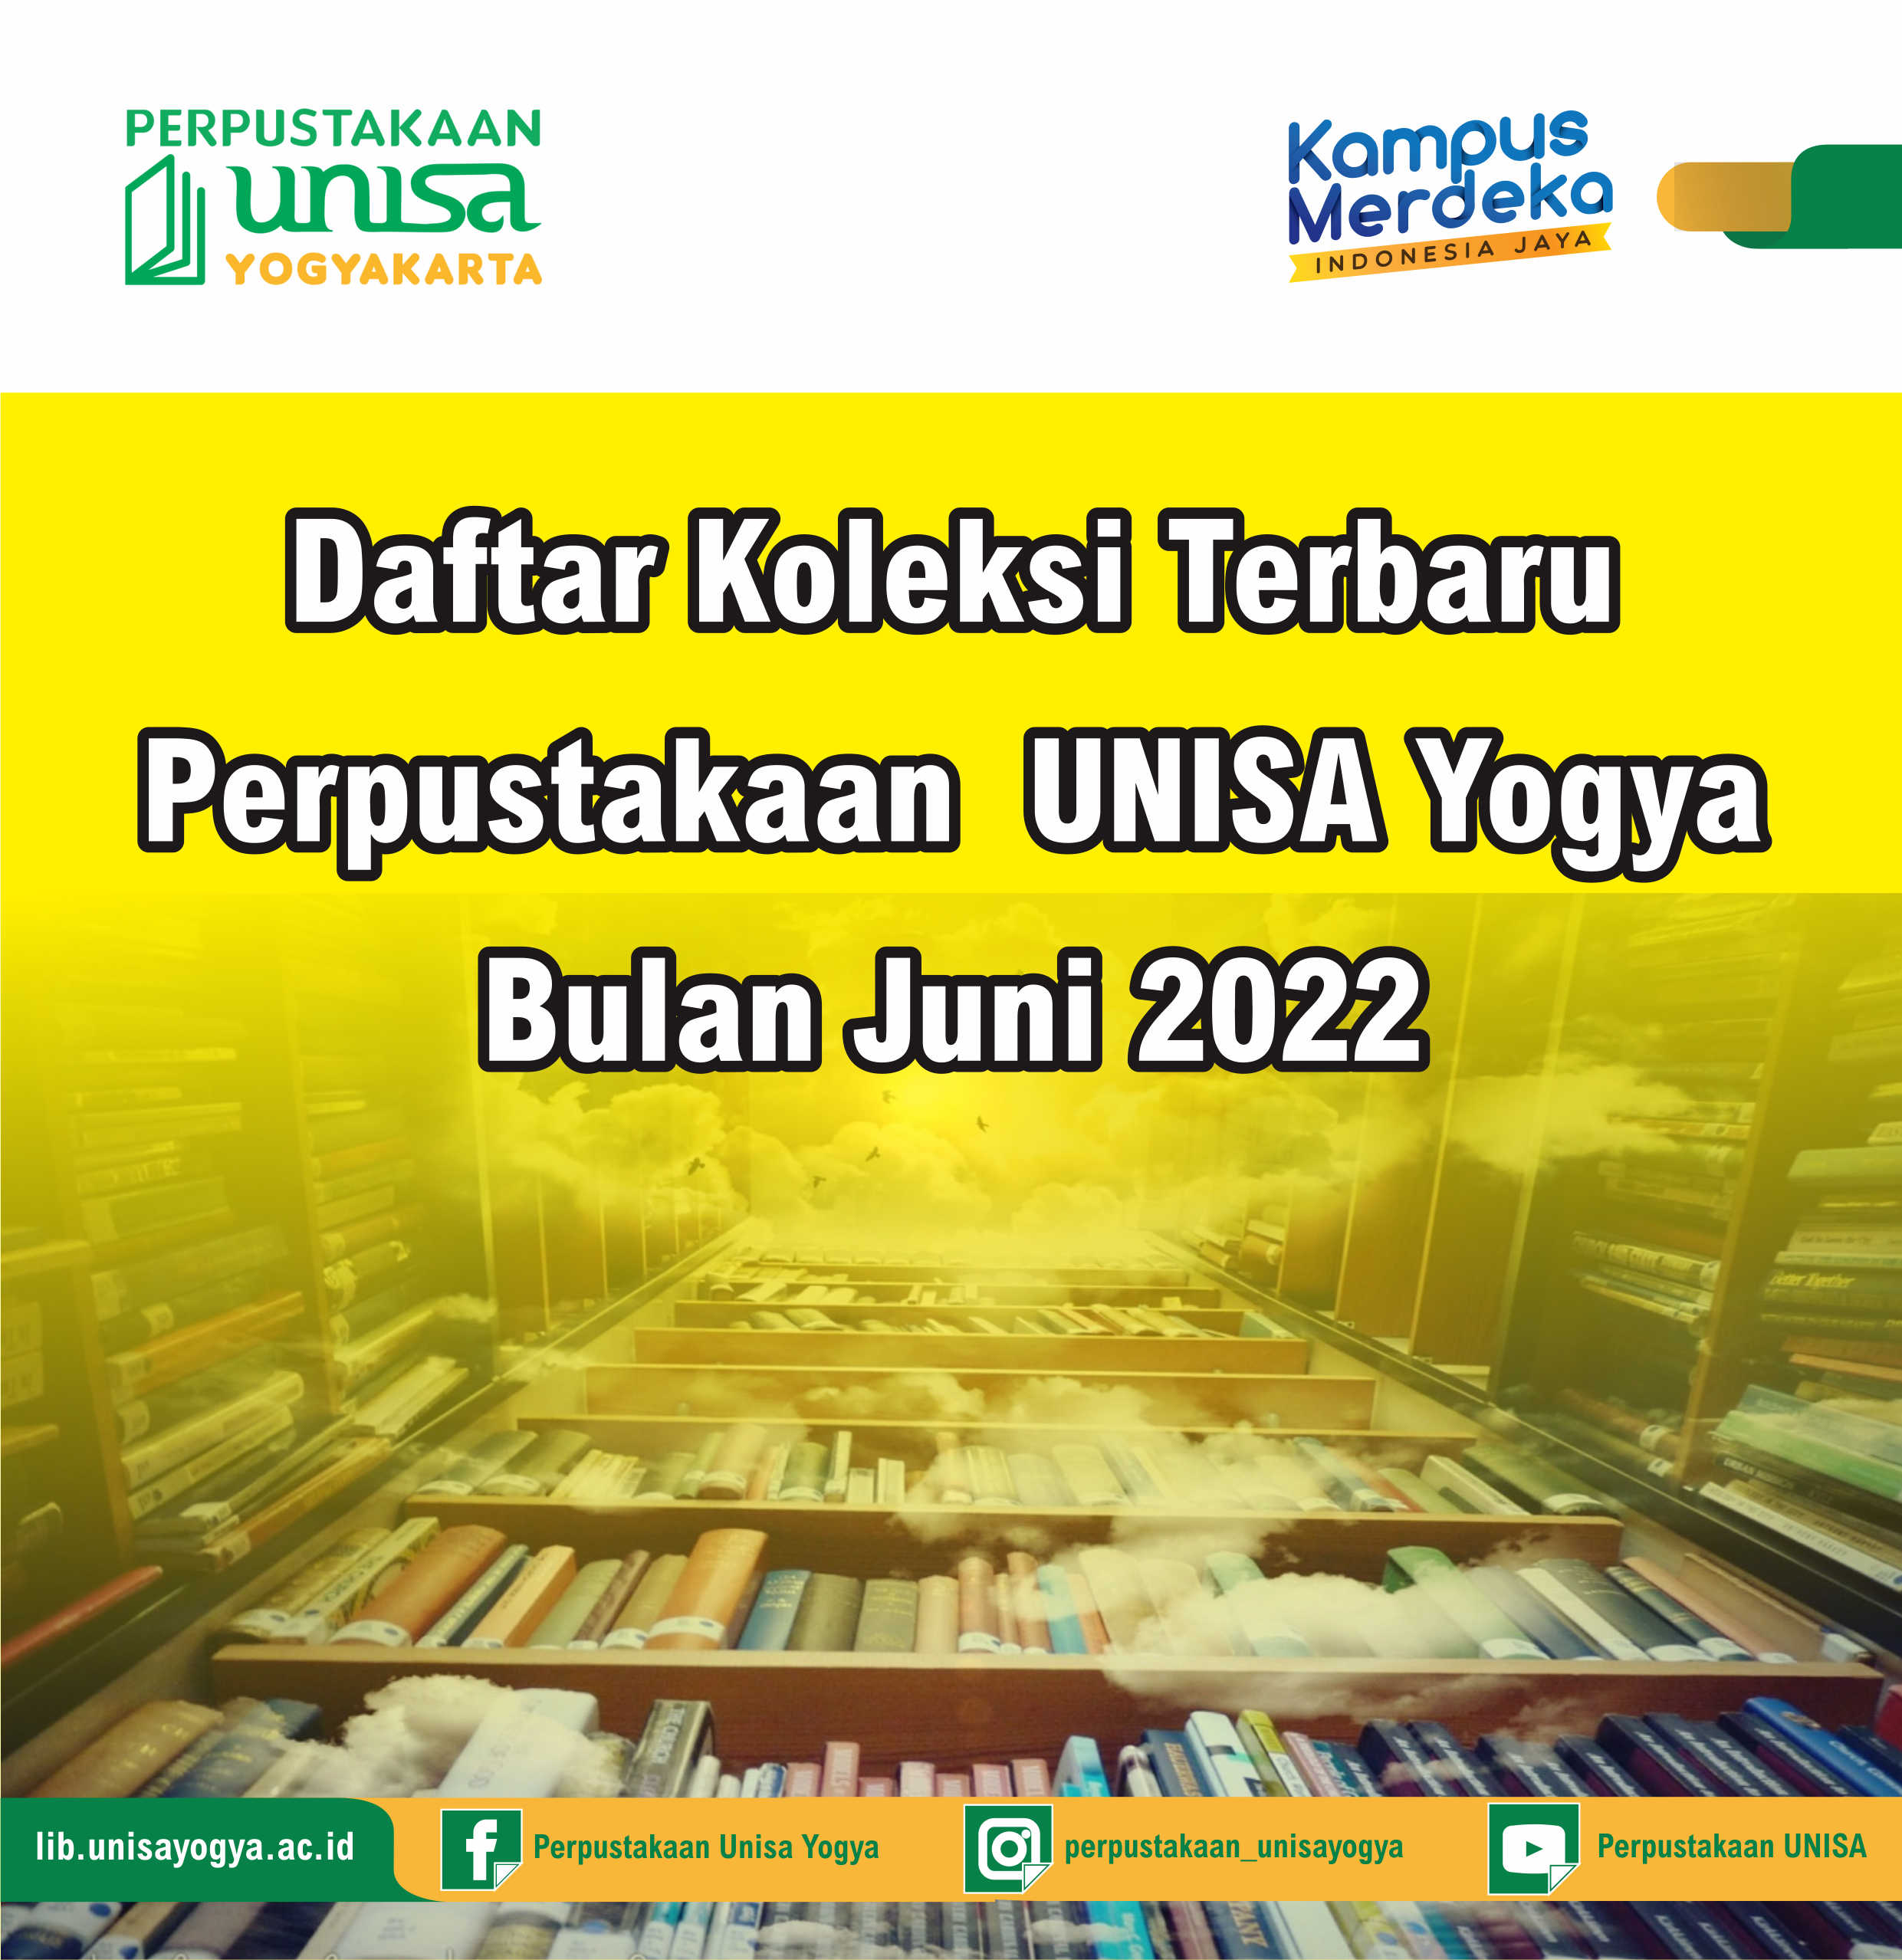 Daftar Koleksi Terbaru Perpustakaan UNISA Yogya Bulan Juni 2022